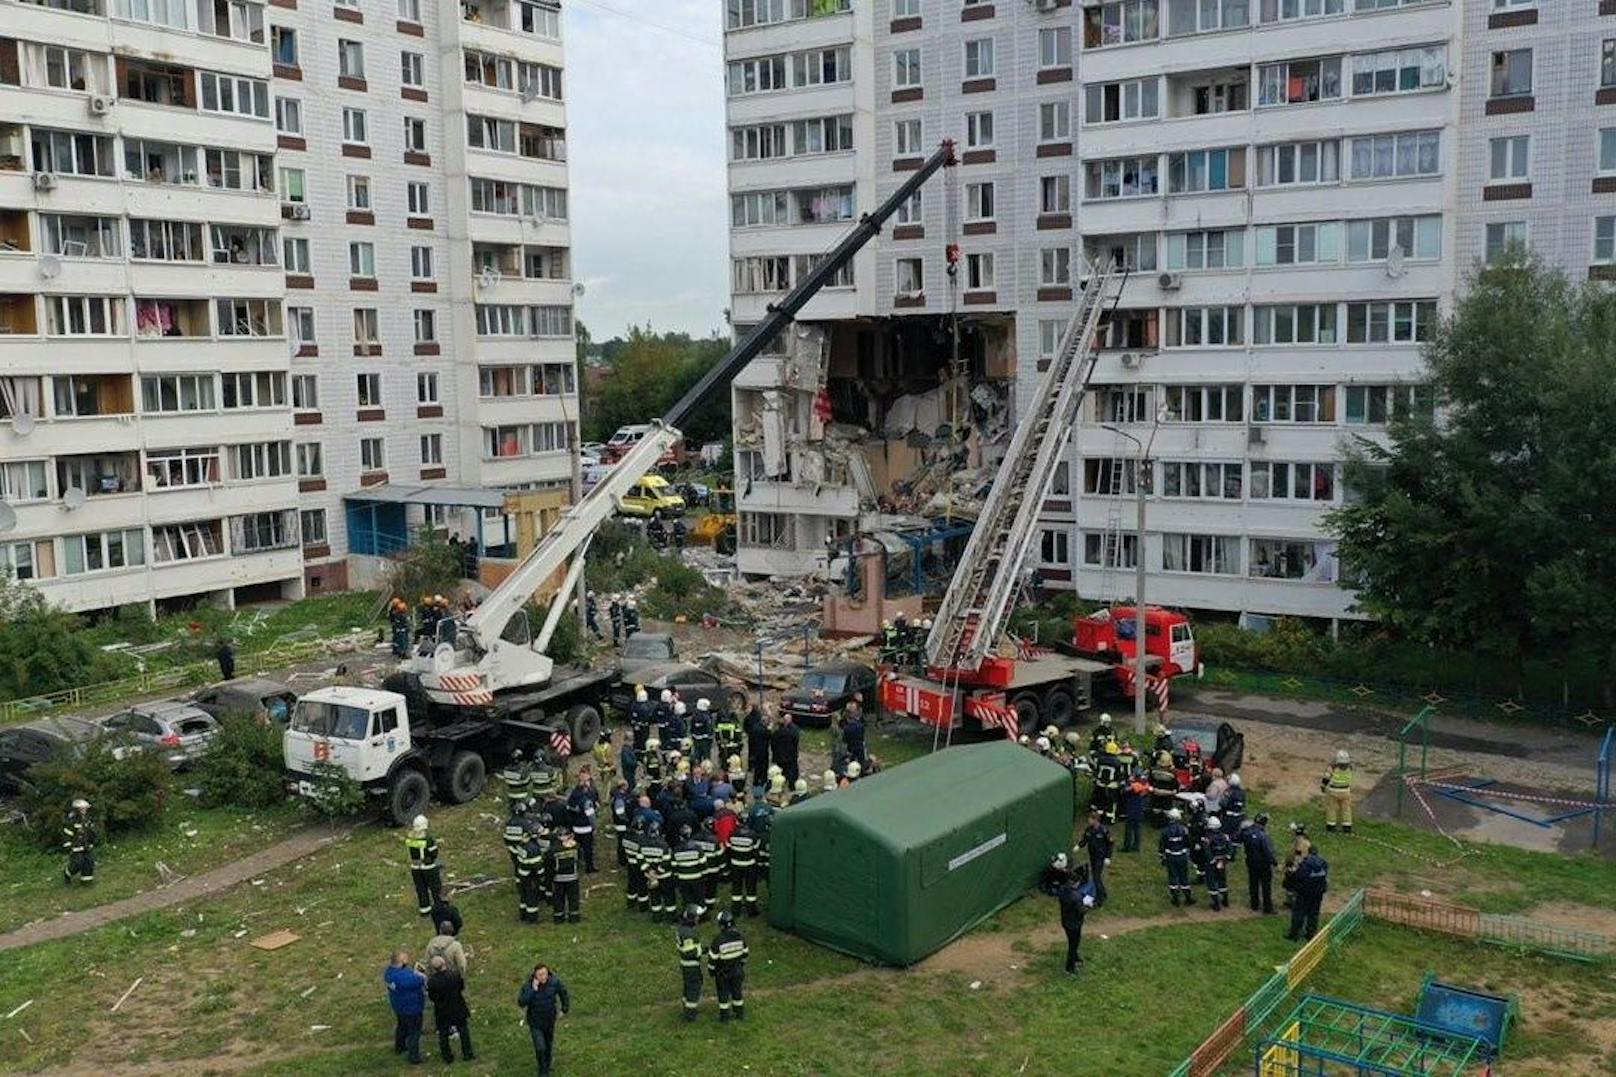 Bilder der Zerstörung: Am Mittwoch kam es in Moskau zu einer Gasexplosion in einem Wohnblock.